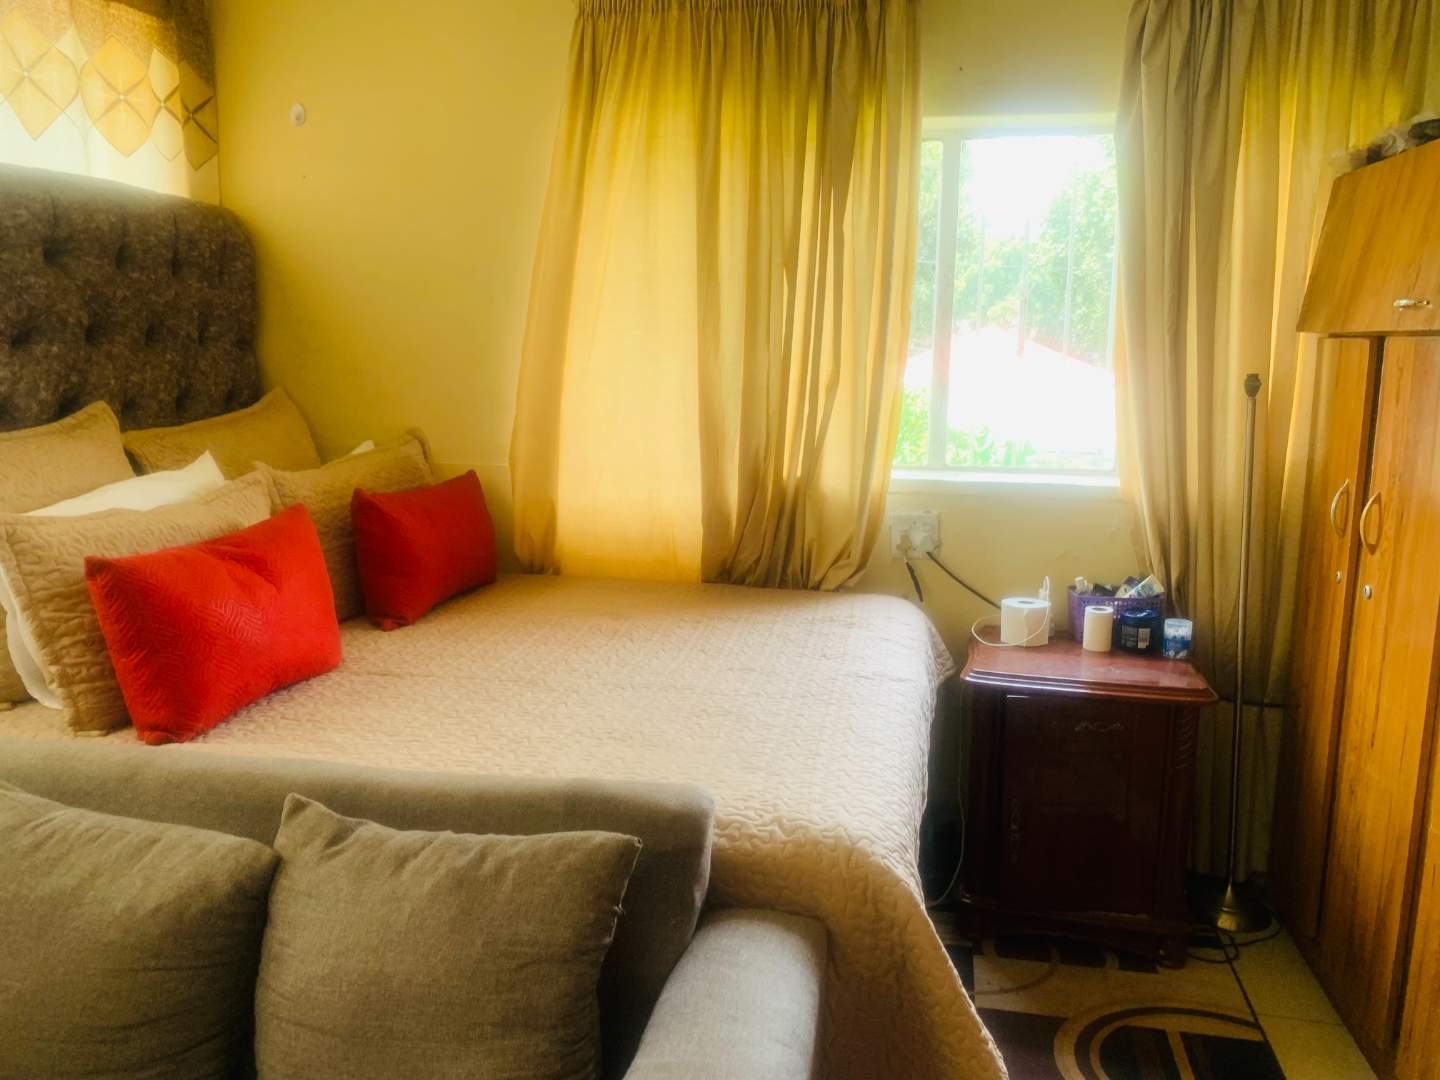 5 Bedroom Property for Sale in Bezuidenhout Valley Gauteng